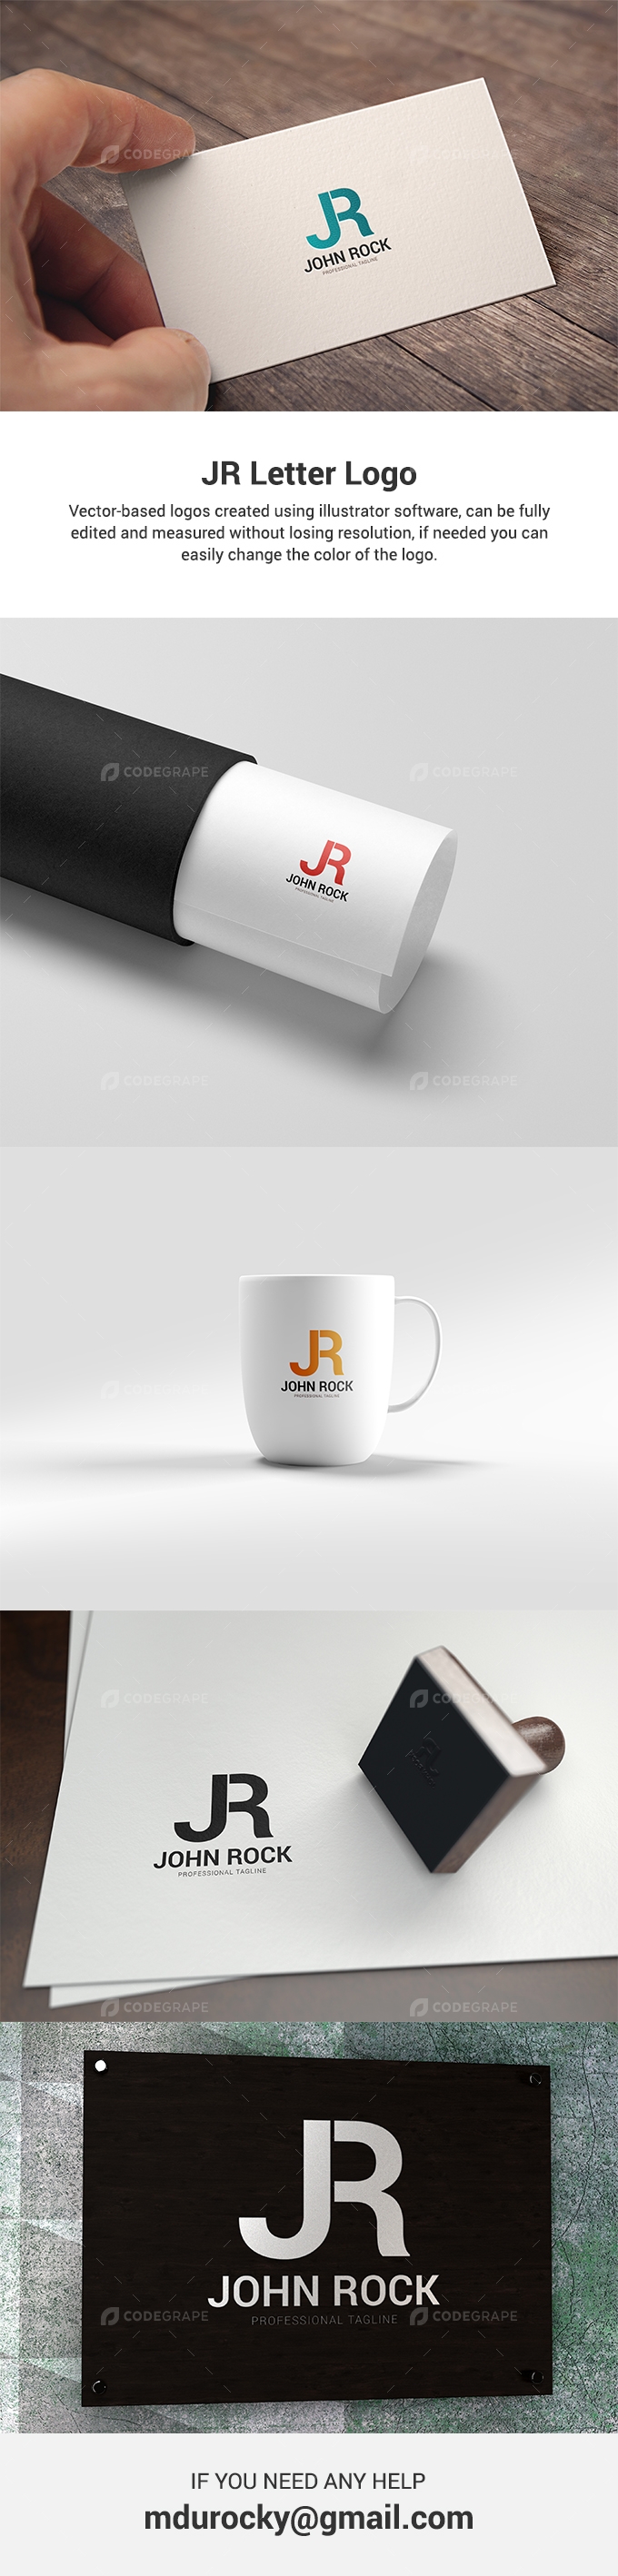 JR Letter Logo